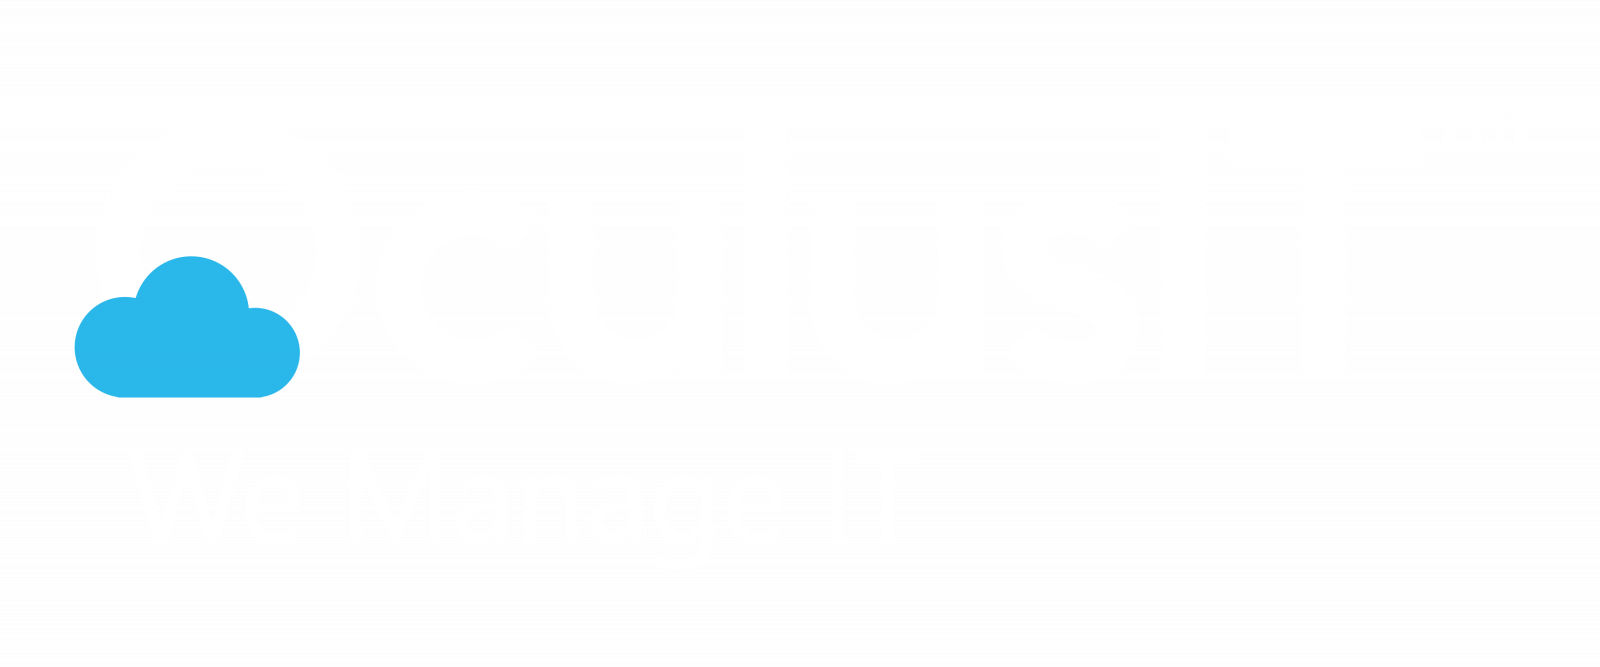 OculusIT